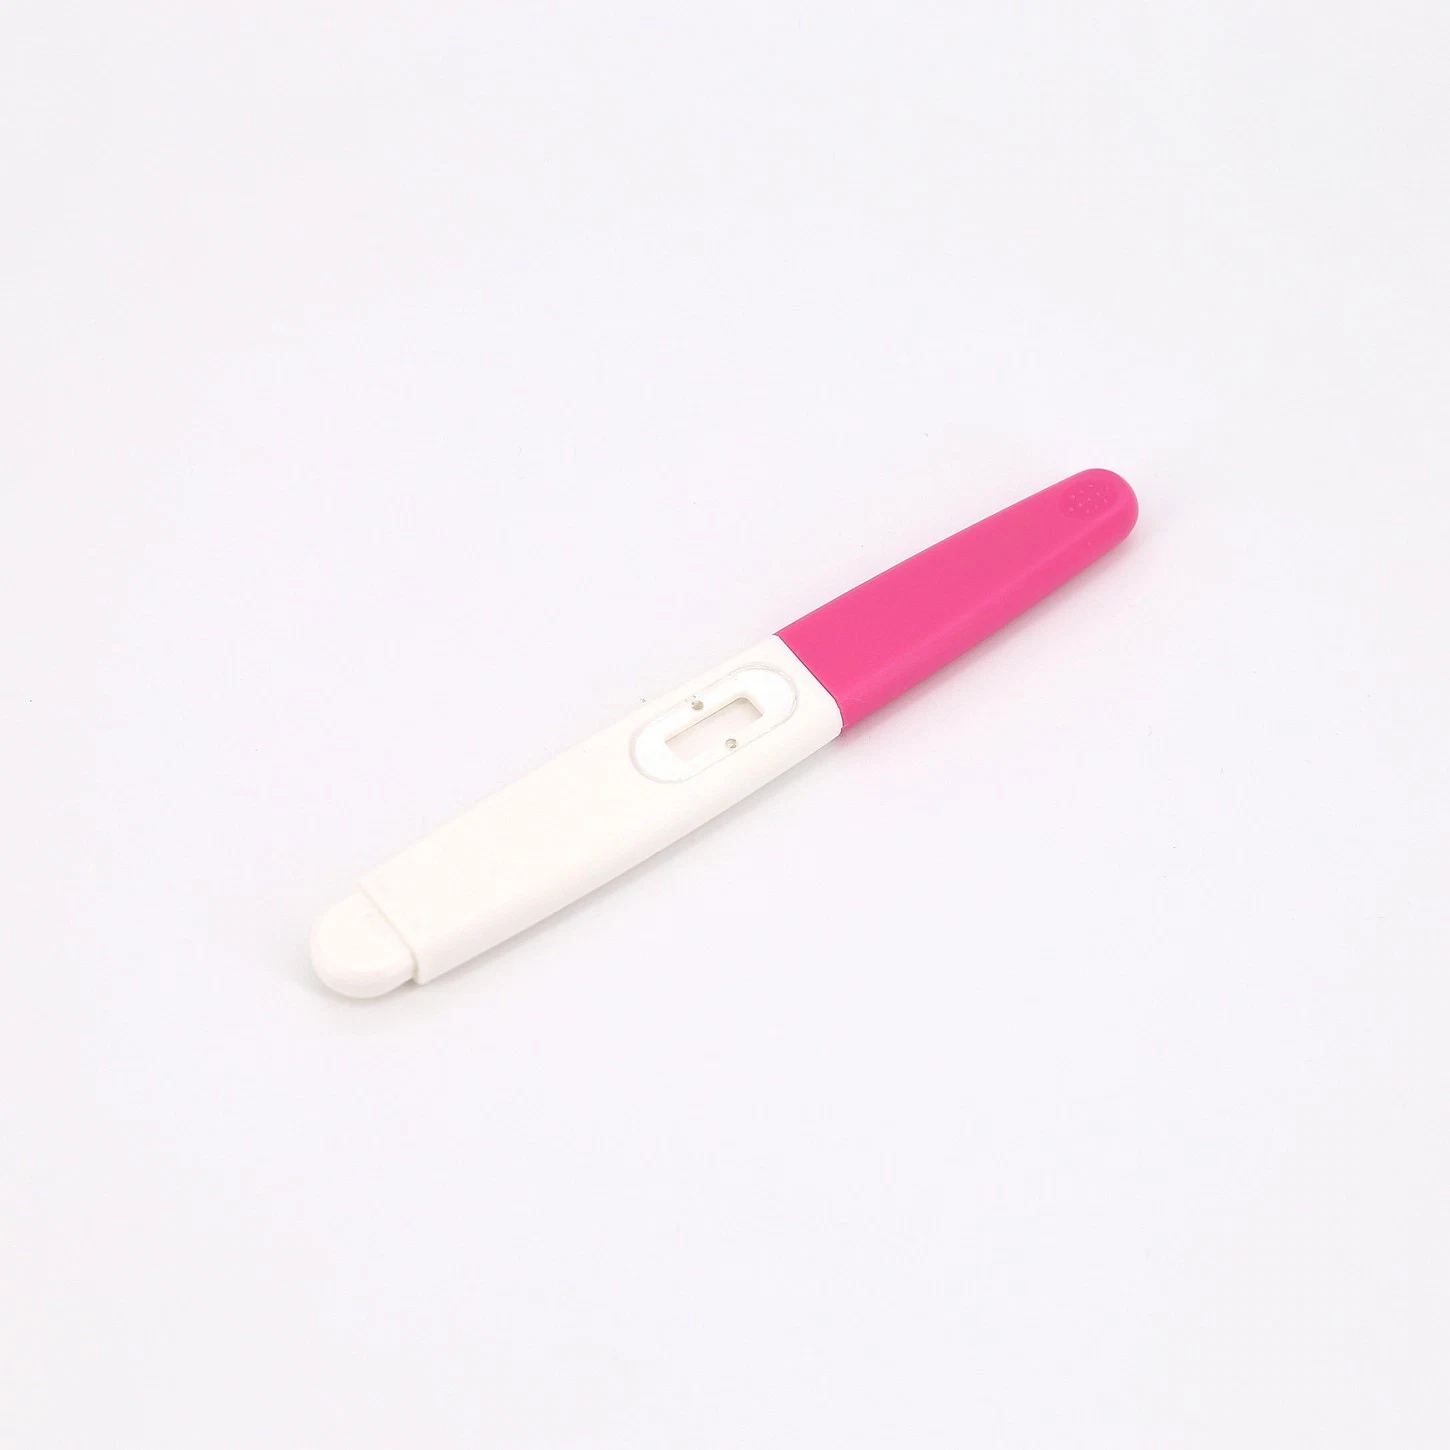 Desechable conveniente un Paso de bebé comprobar orina HCG embarazo rápido Tipo de pluma de prueba Midstream para uso doméstico